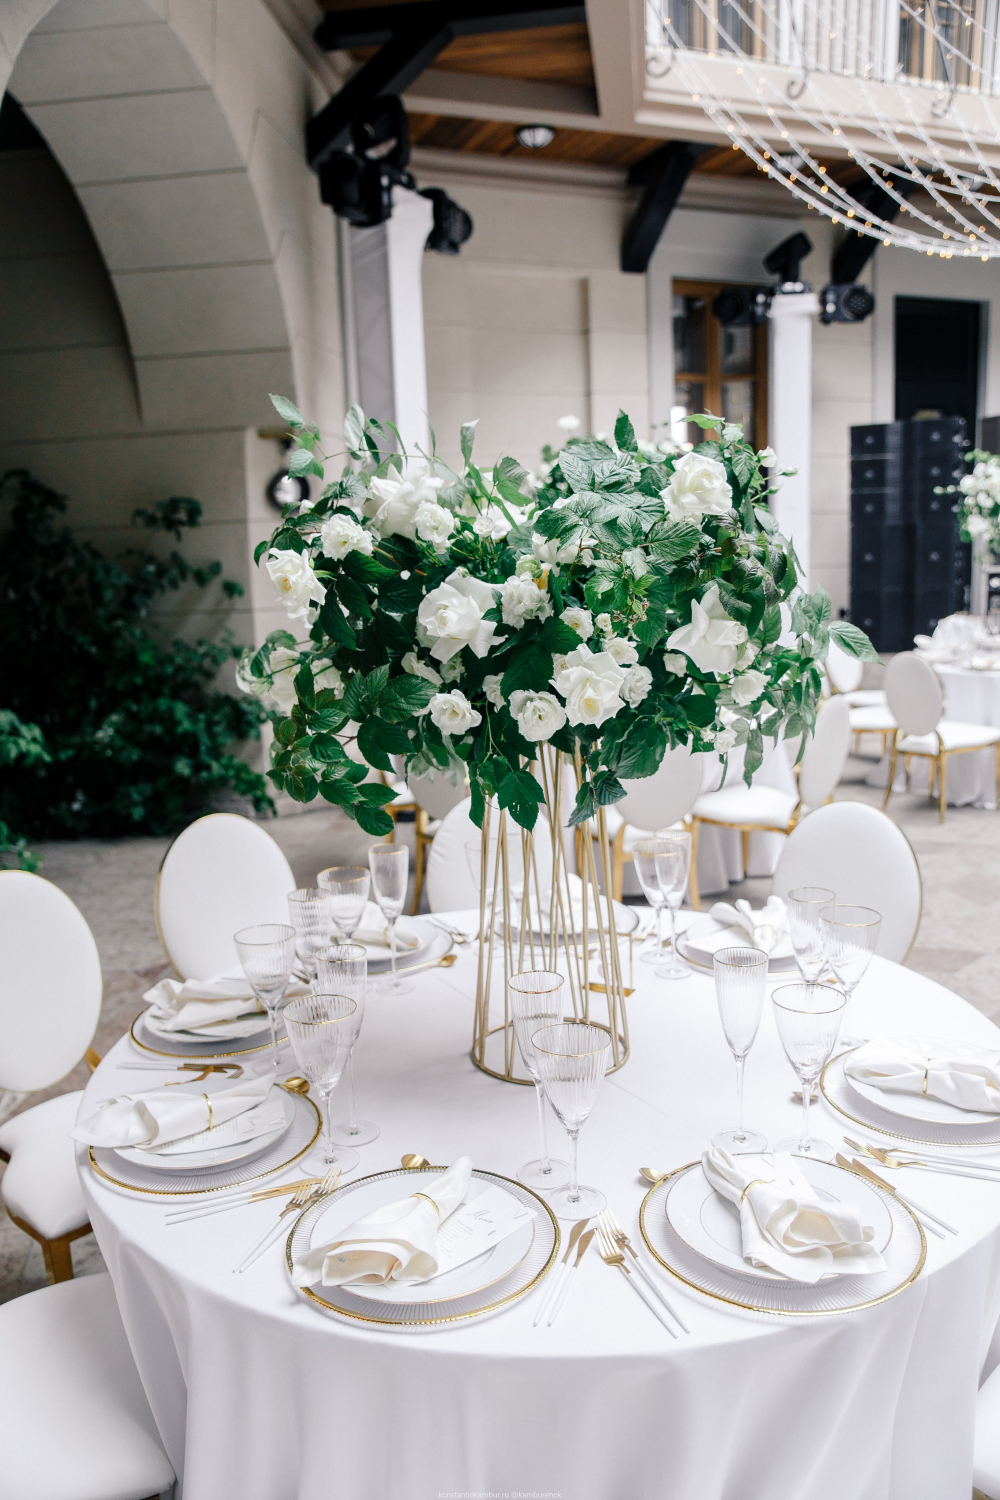 Оформление свадьбы в "Замке БИП"
Композиция на стол гостей в бело - зеленом цвете